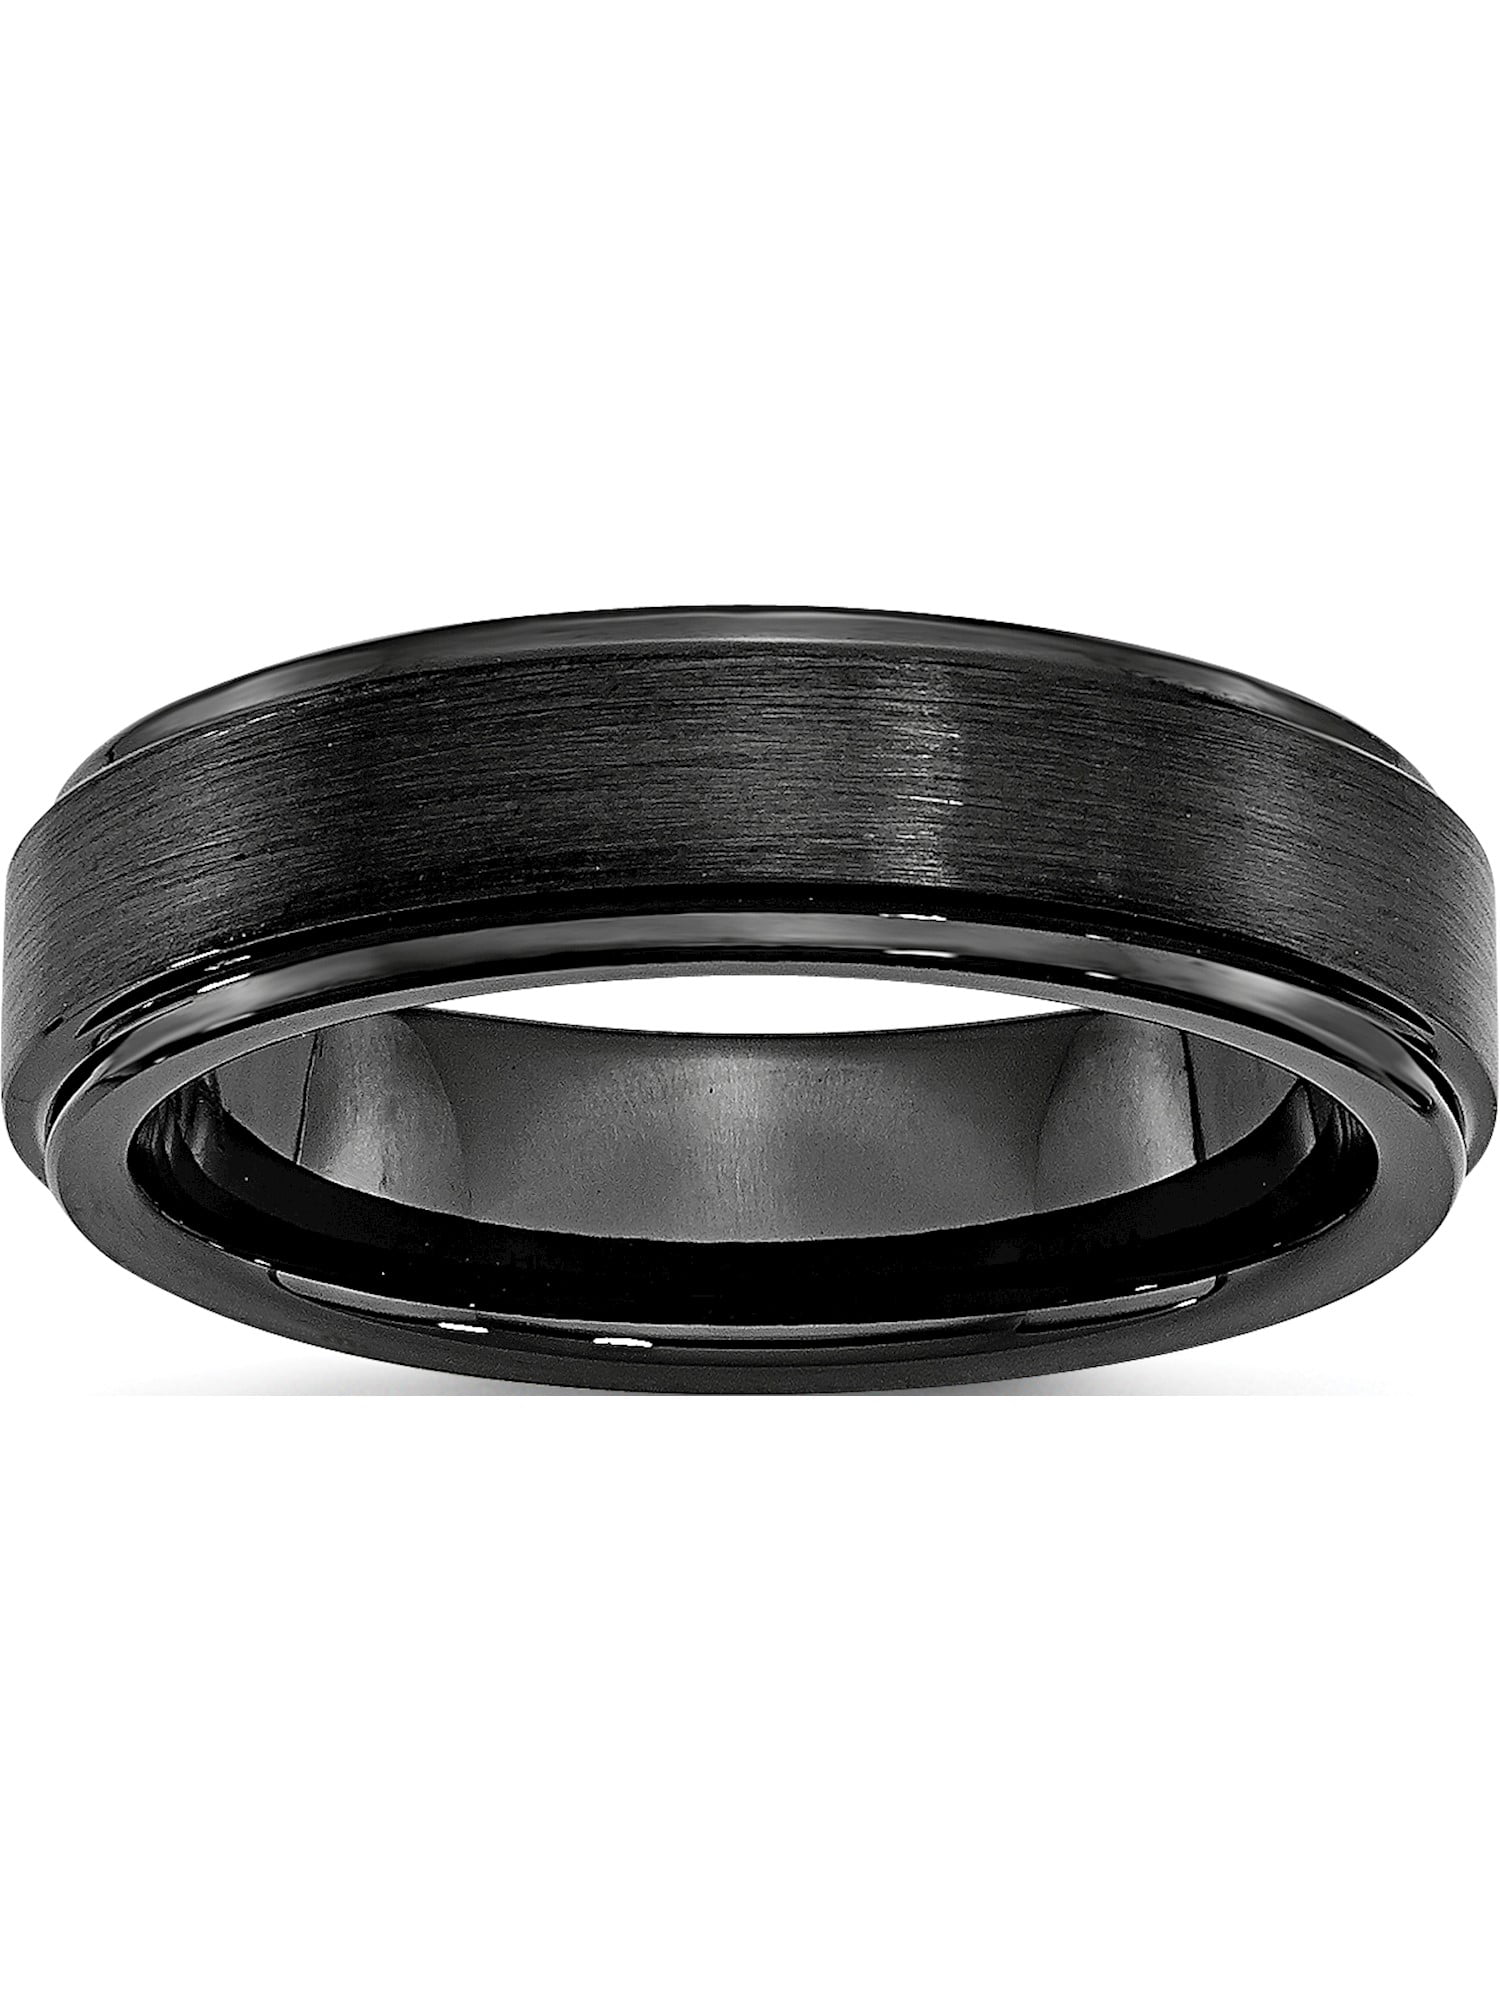 Ceramic 06.00 Ridged Band Ring Size 6